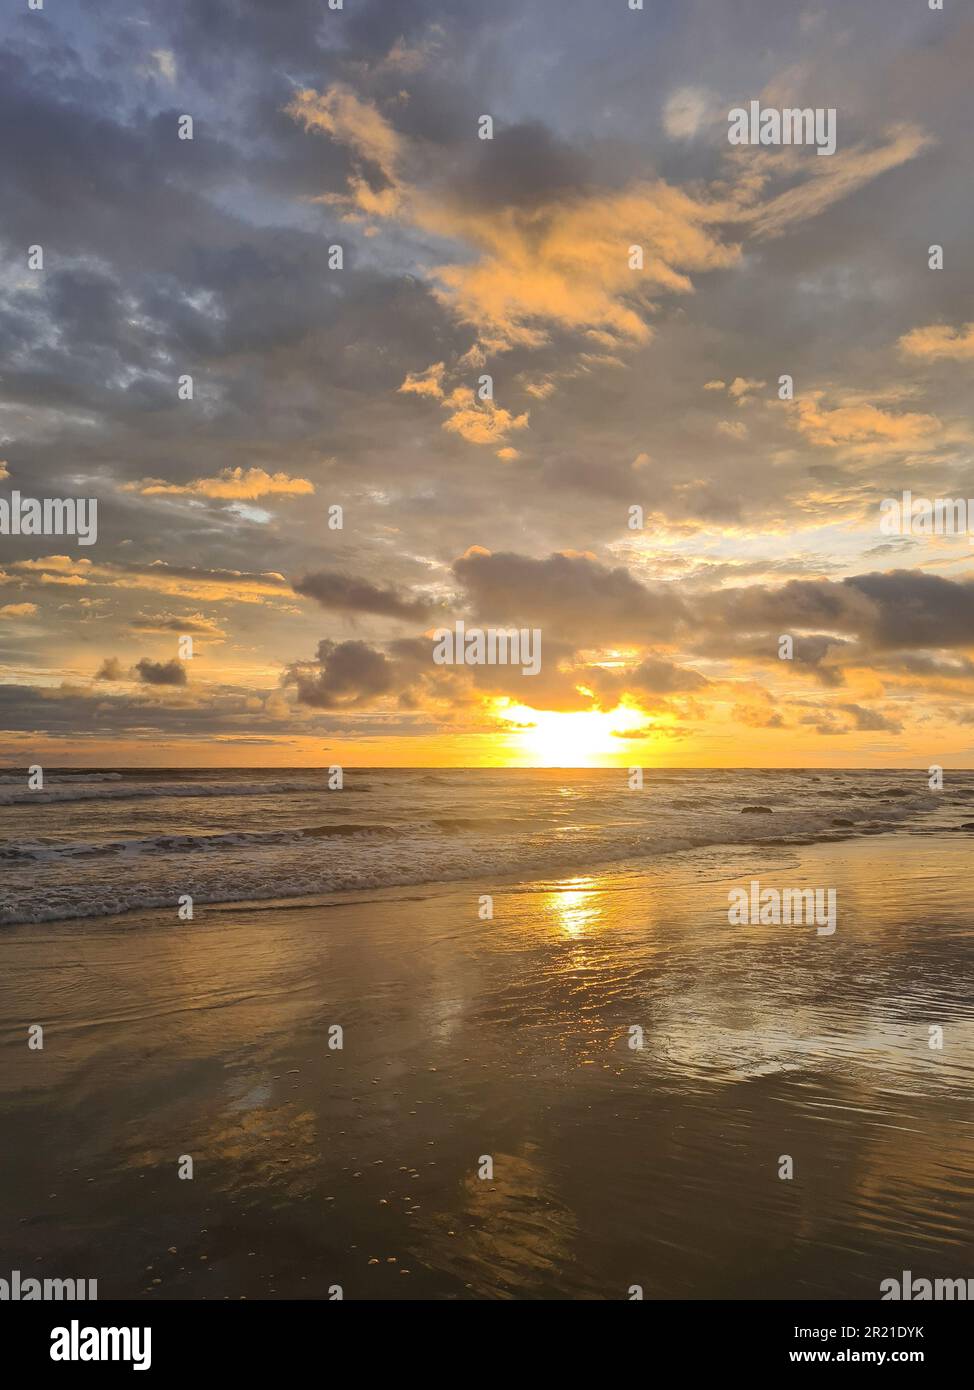 Dramatic sunset twilight theme. Scenic vacation photo background Stock Photo